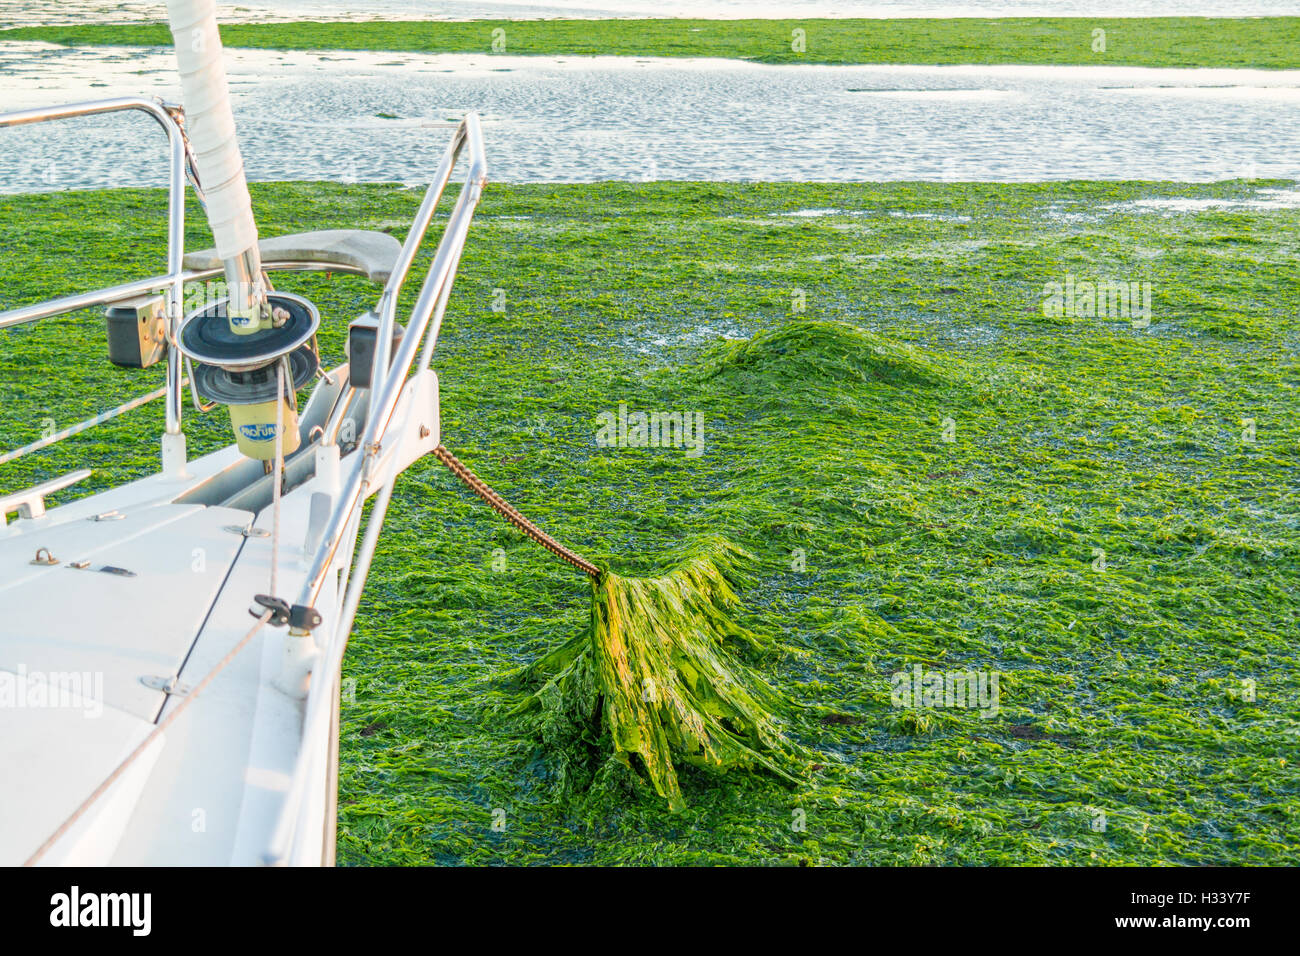 Proue de bateau et une chaîne d'couvertes de laitue de mer d'eau salée sur les estrans à marée basse de Wadden, Pays-Bas Banque D'Images